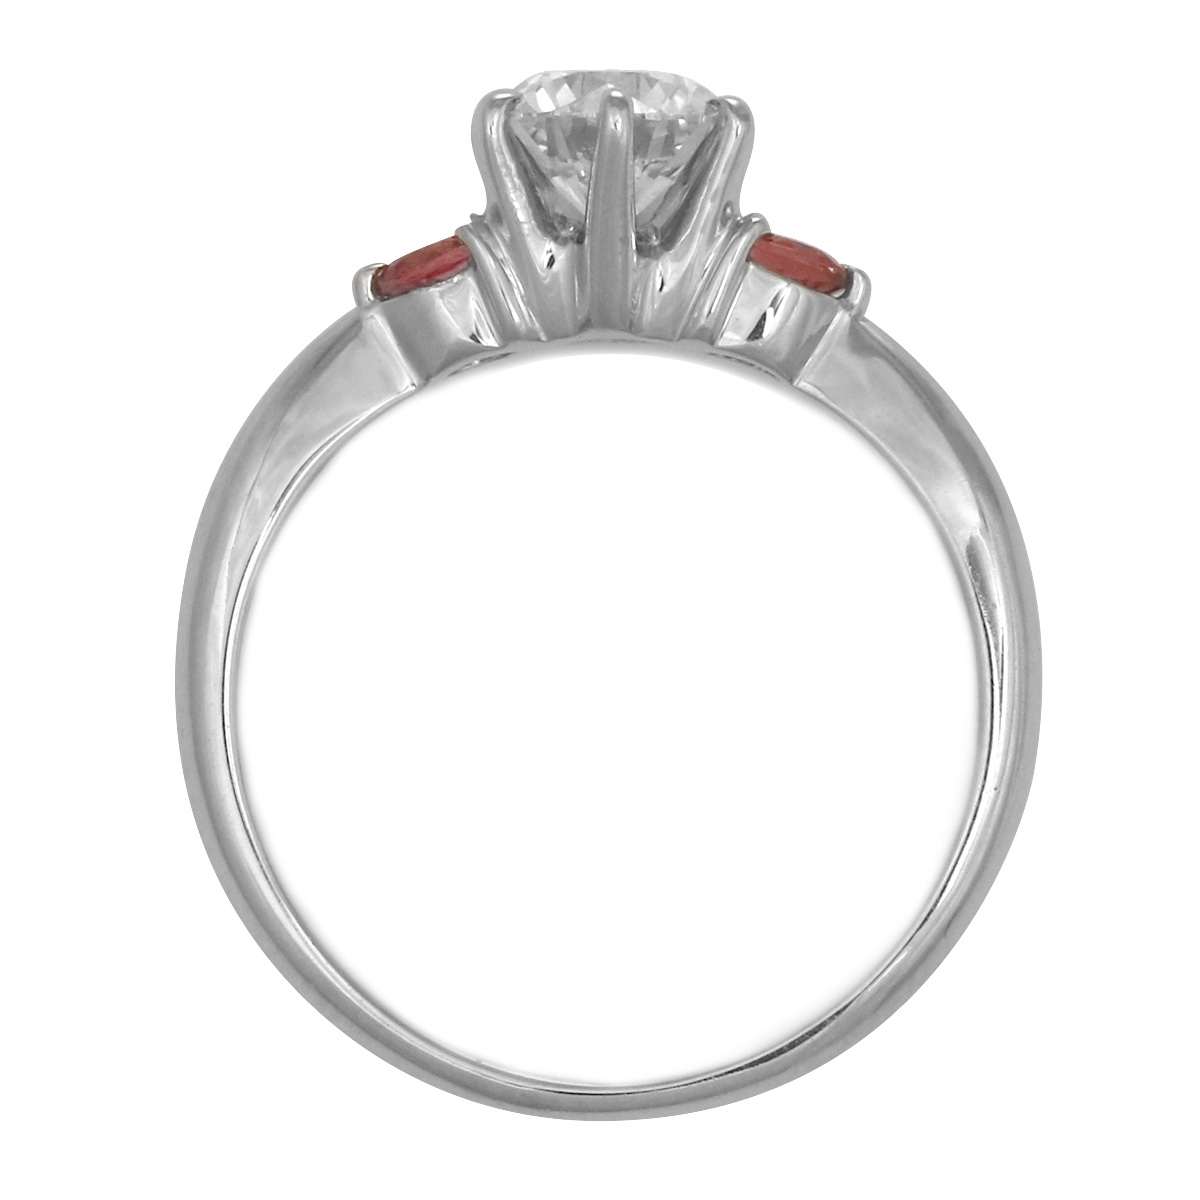 婚約指輪 ダイヤモンド プラチナリング 一粒 大粒 指輪 エンゲージリング 0.4ct プロポーズ用 レディース 人気 ダイヤ 刻印無料 12